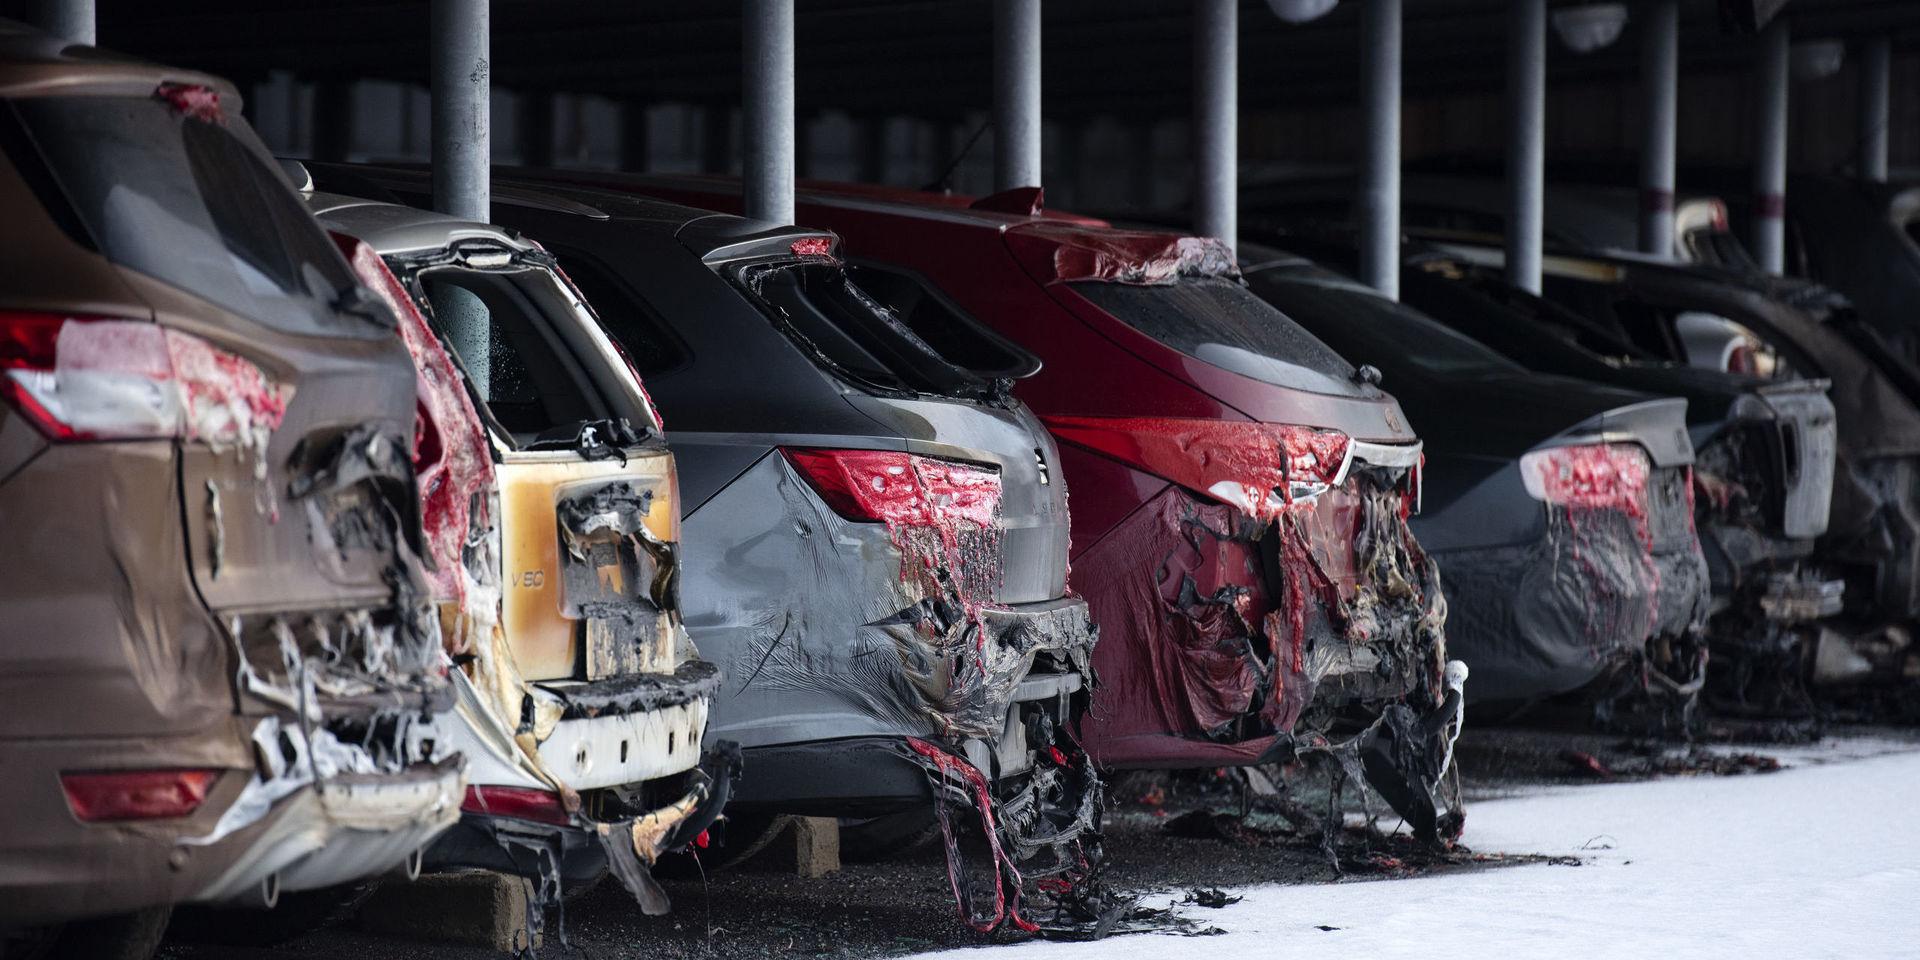 Uppemot 50 bilar förstördes eller skadades.